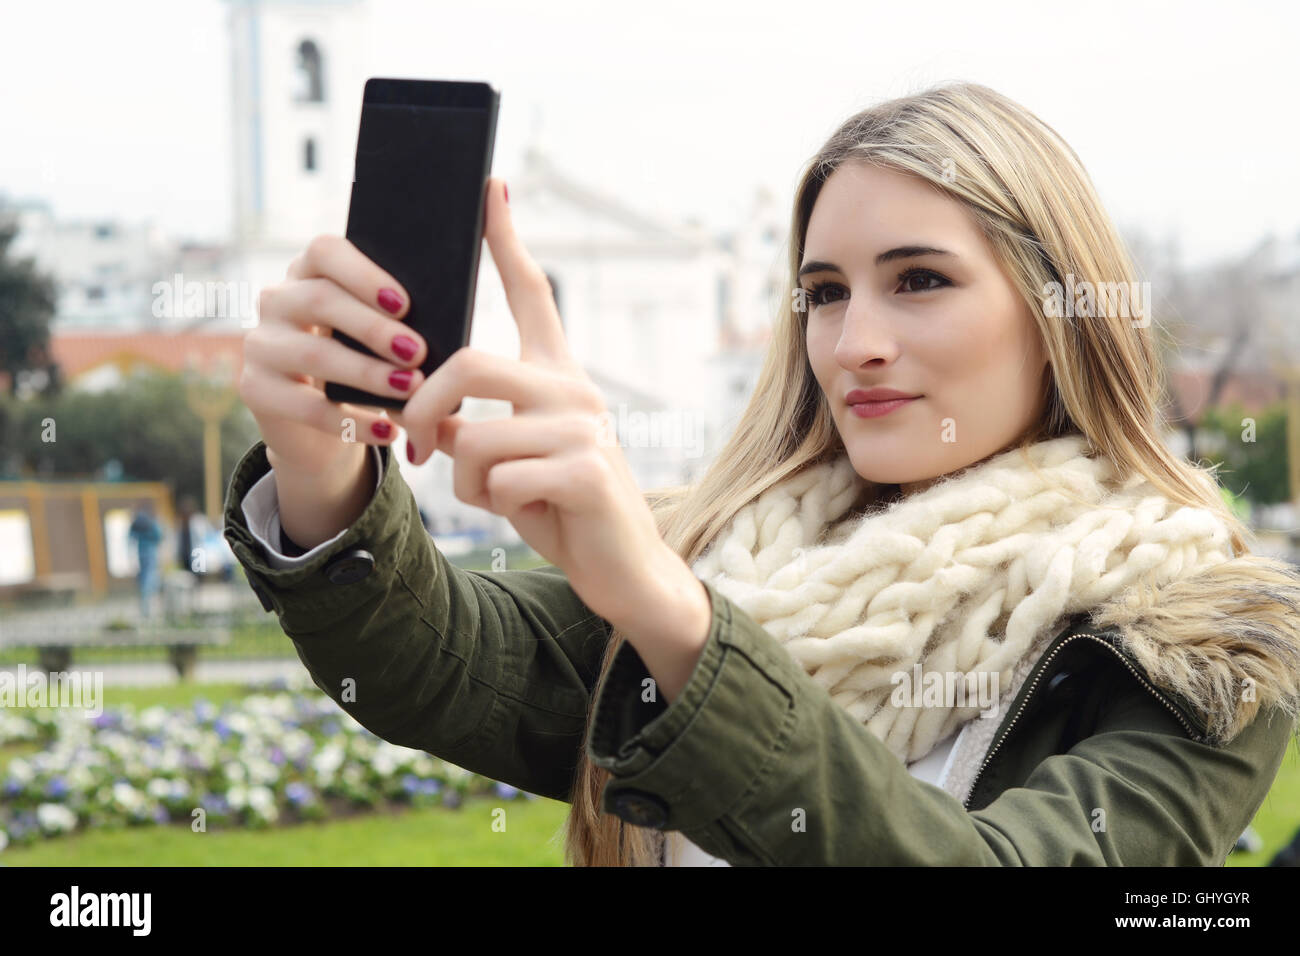 Ritratto di una giovane donna bellissima tenendo selfie con il suo smartphone. All'esterno. Foto Stock